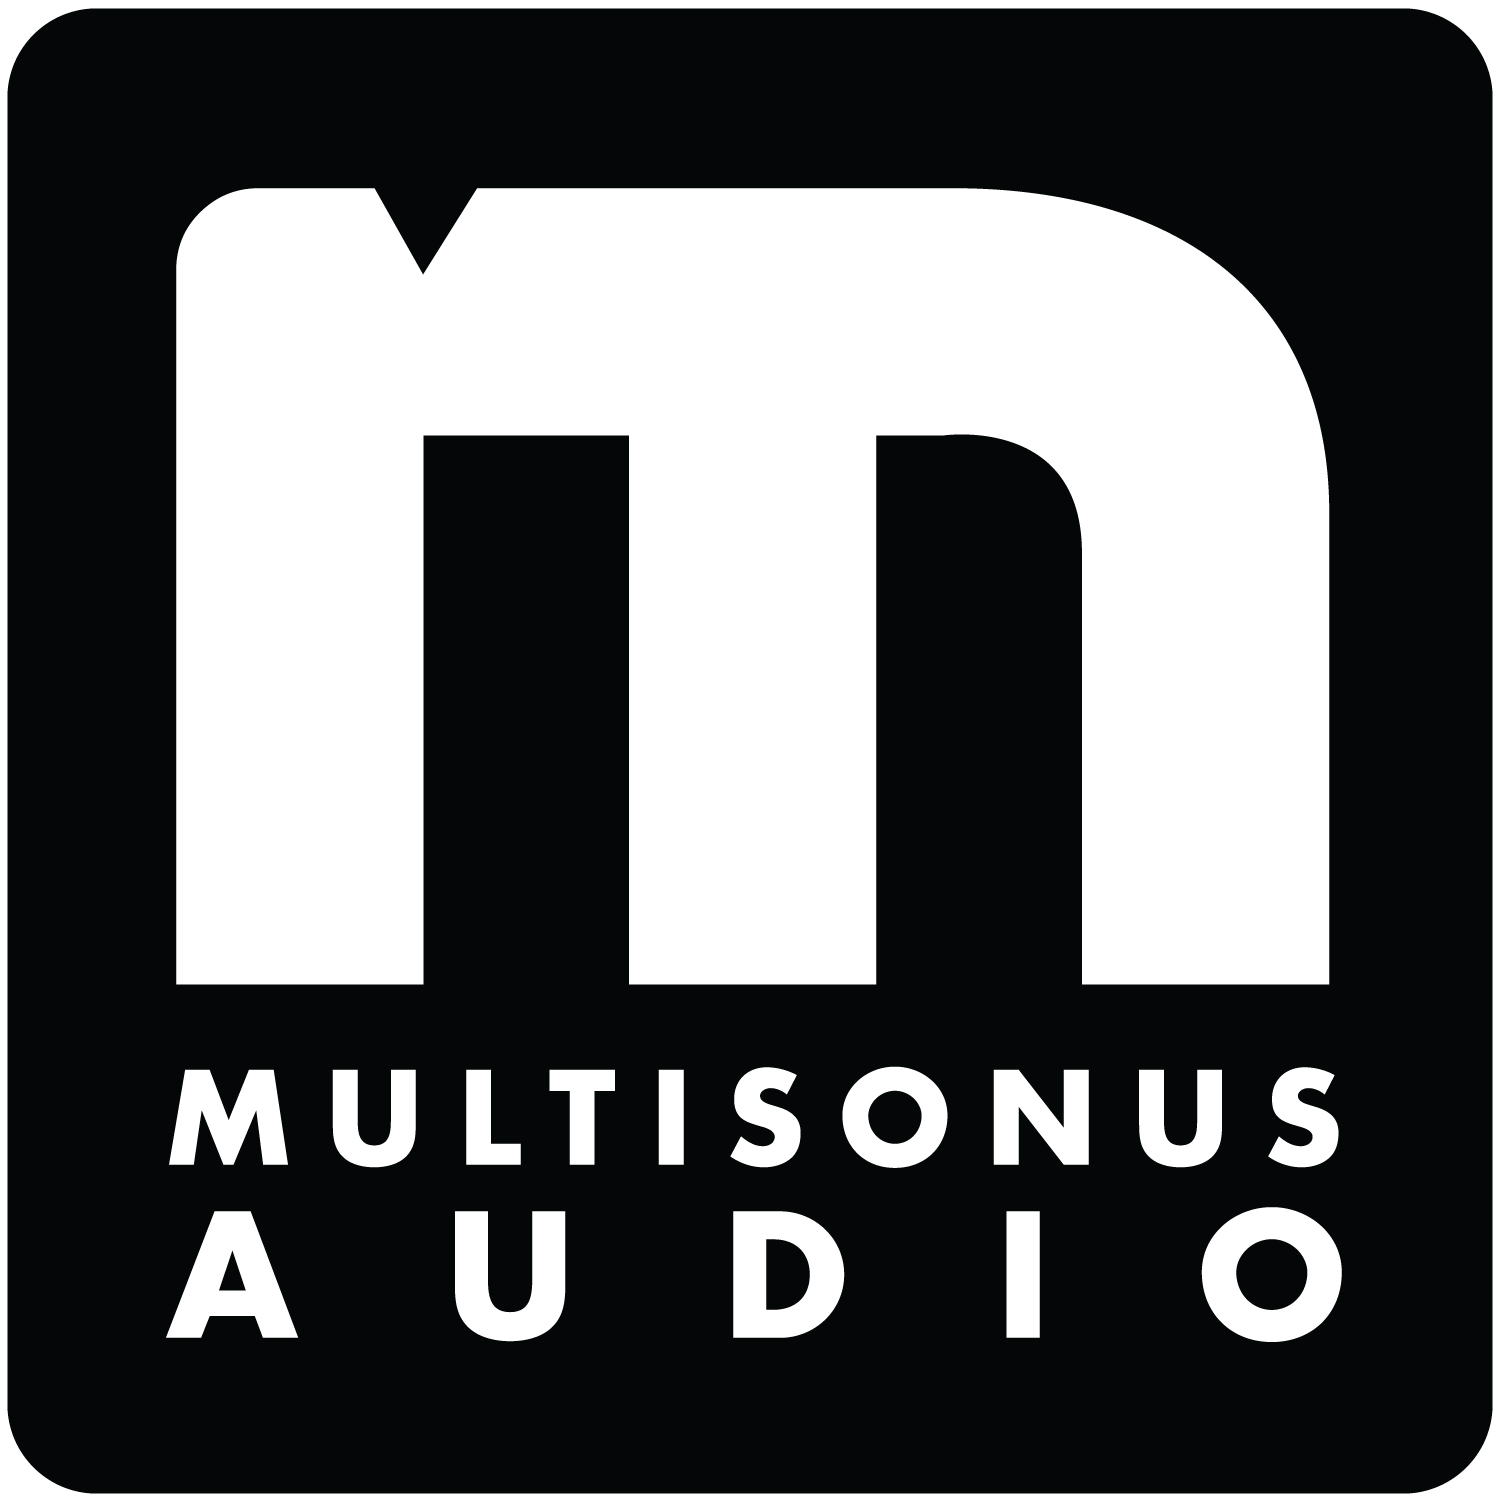 Multisonus audio logo